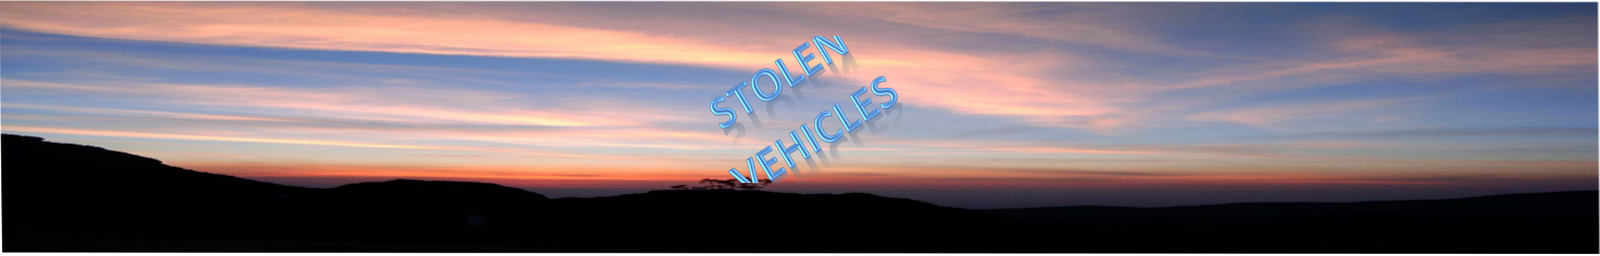 Stolen Vehicles